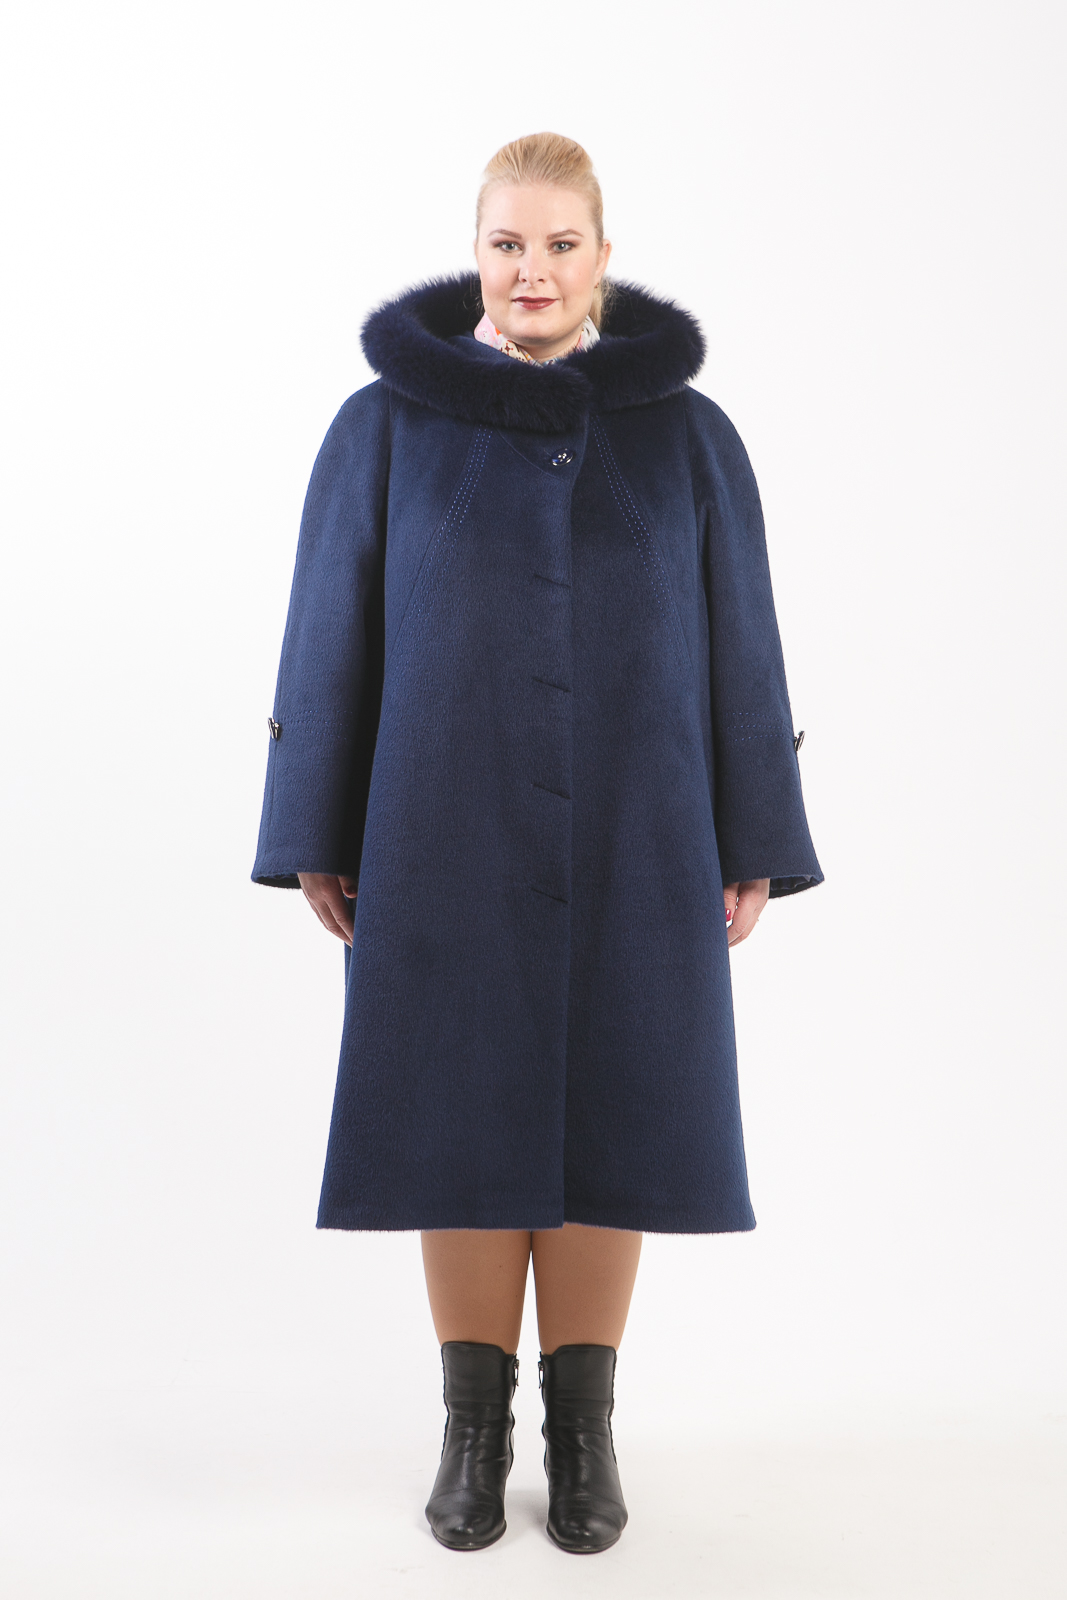 Женское зимнее пальто фабрика Warda